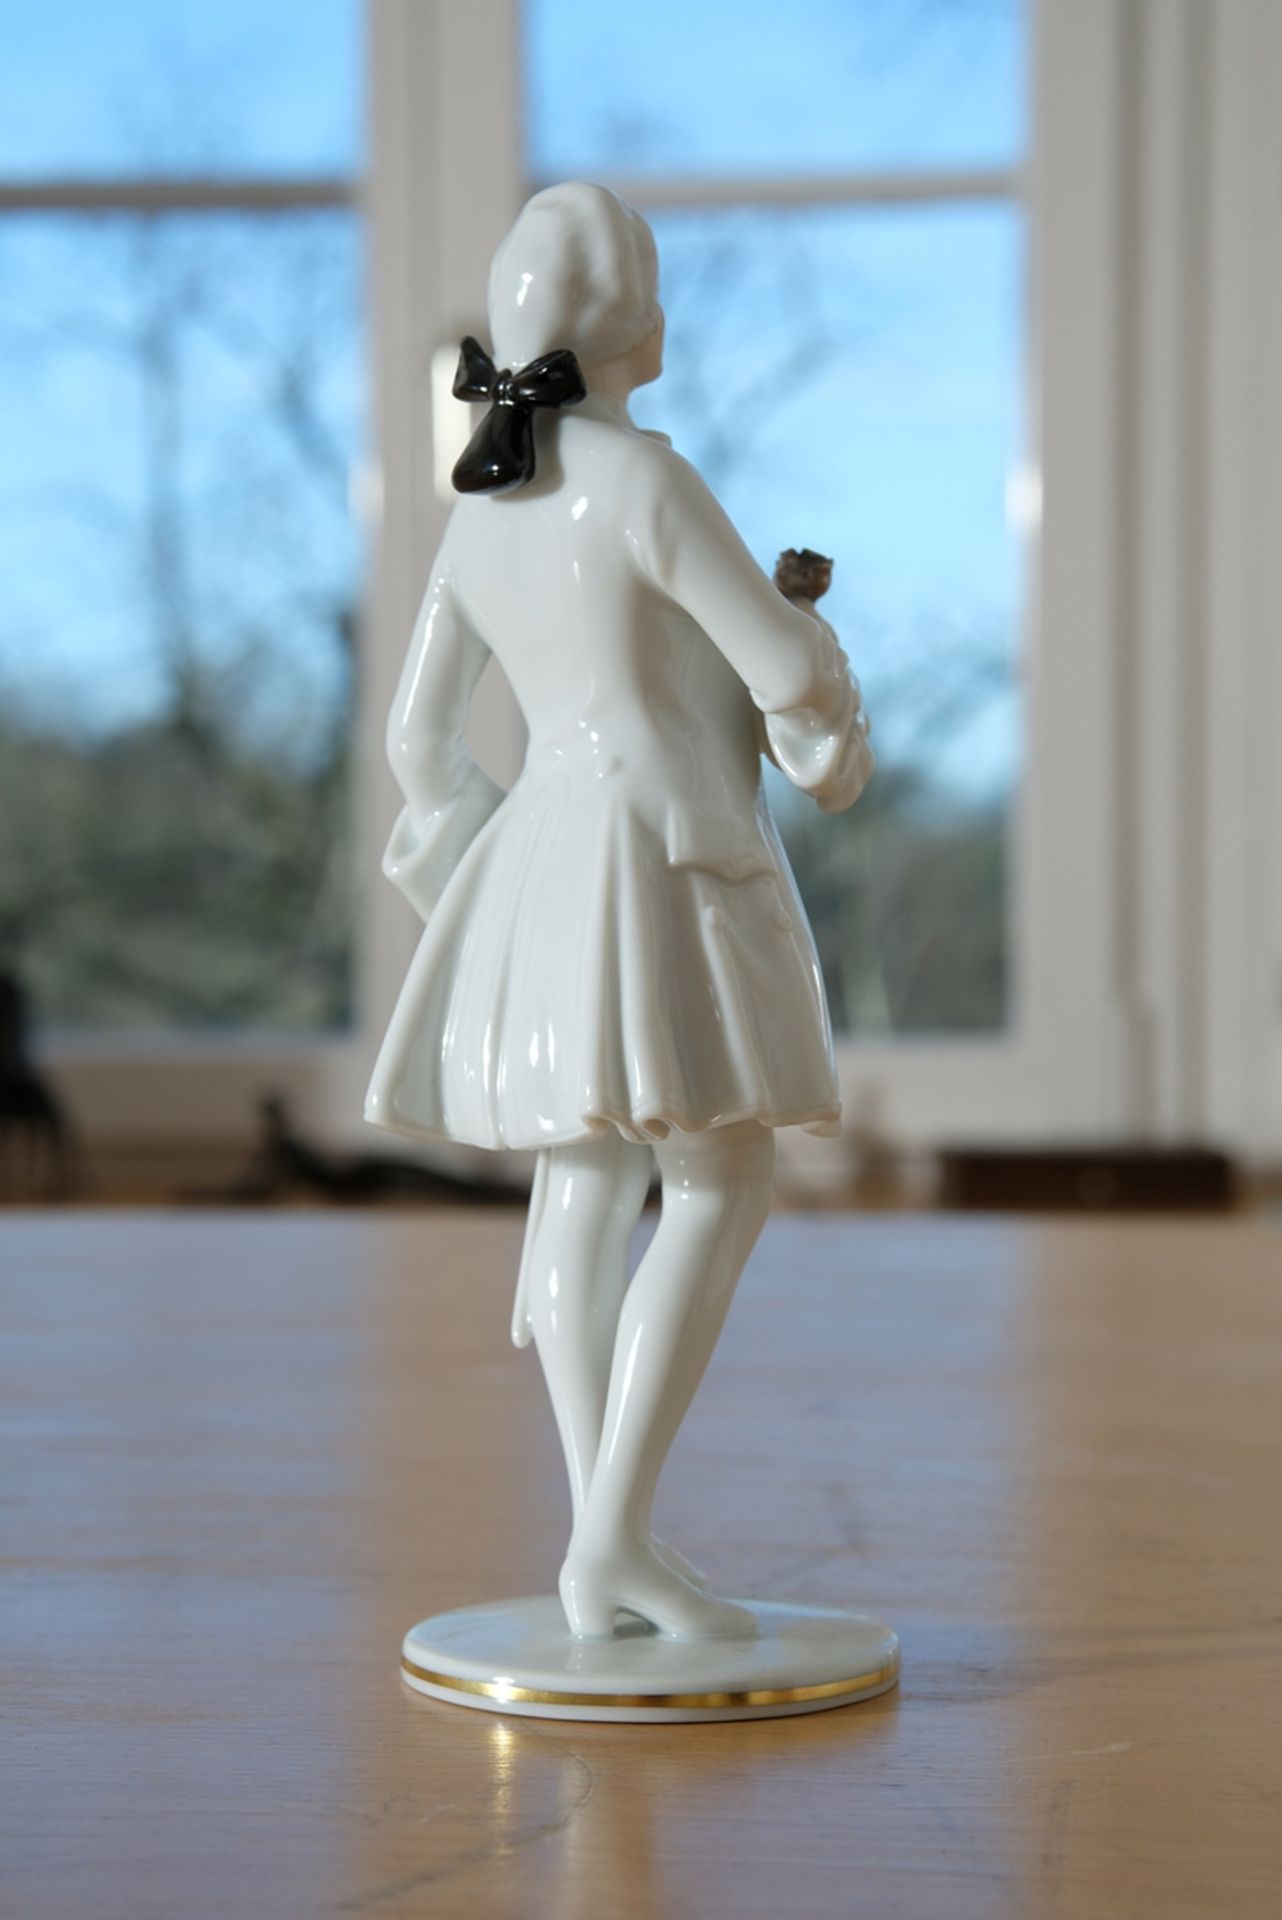 Porcelain figurine Rosenkavalier, Augarten Vienna, 22 cm high - Image 2 of 3